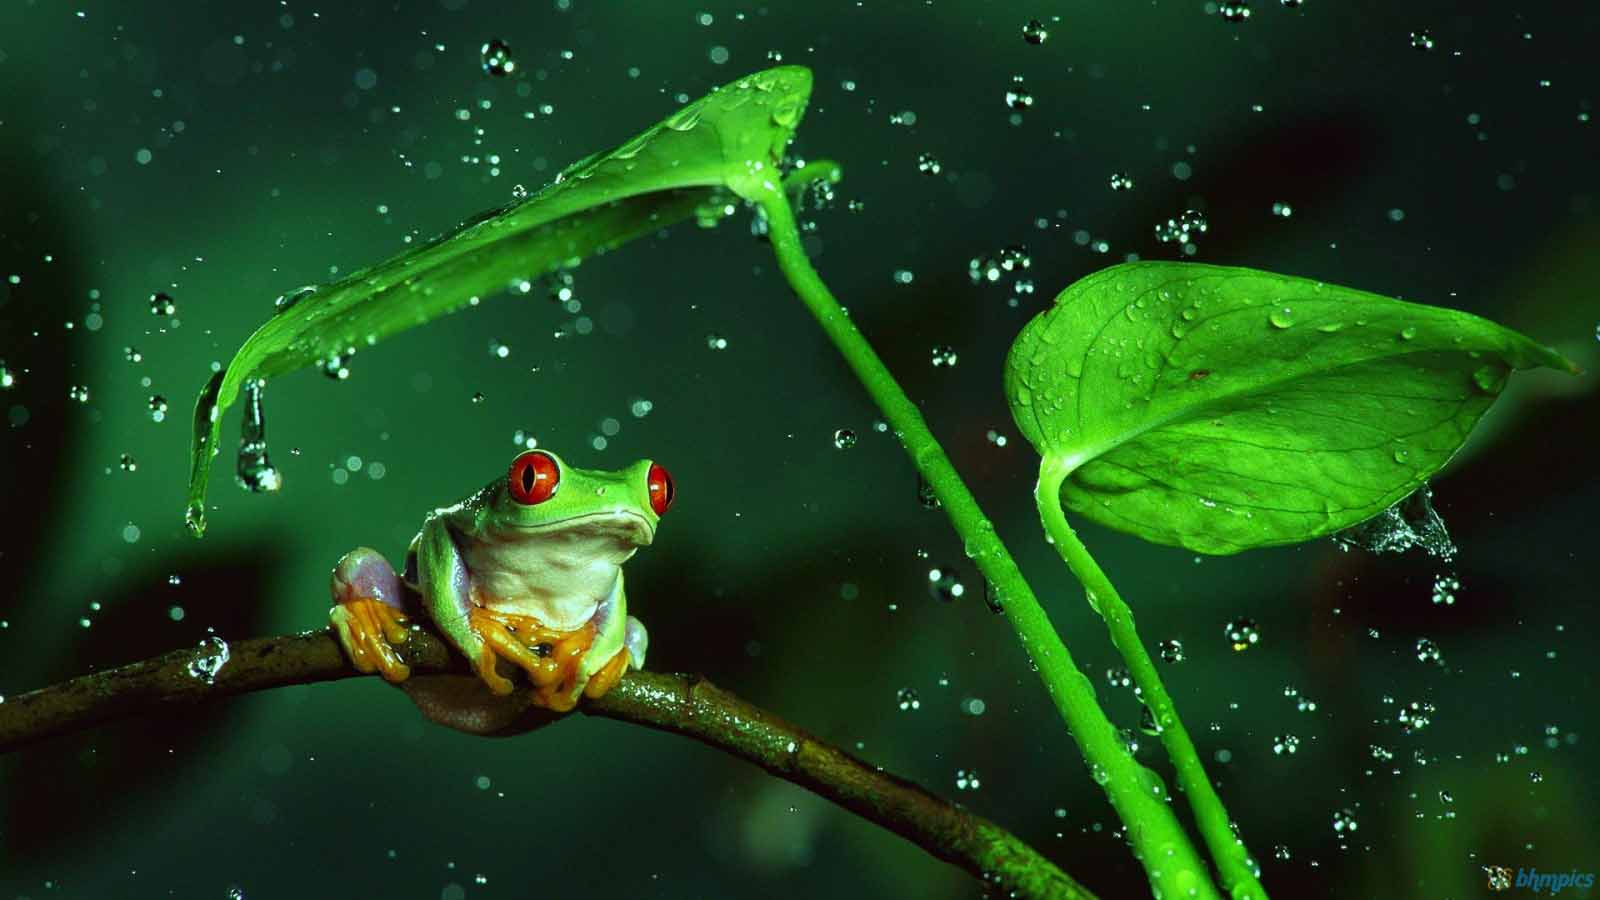 wallpaper hujan,frog,water,tree frog,true frog,amphibian